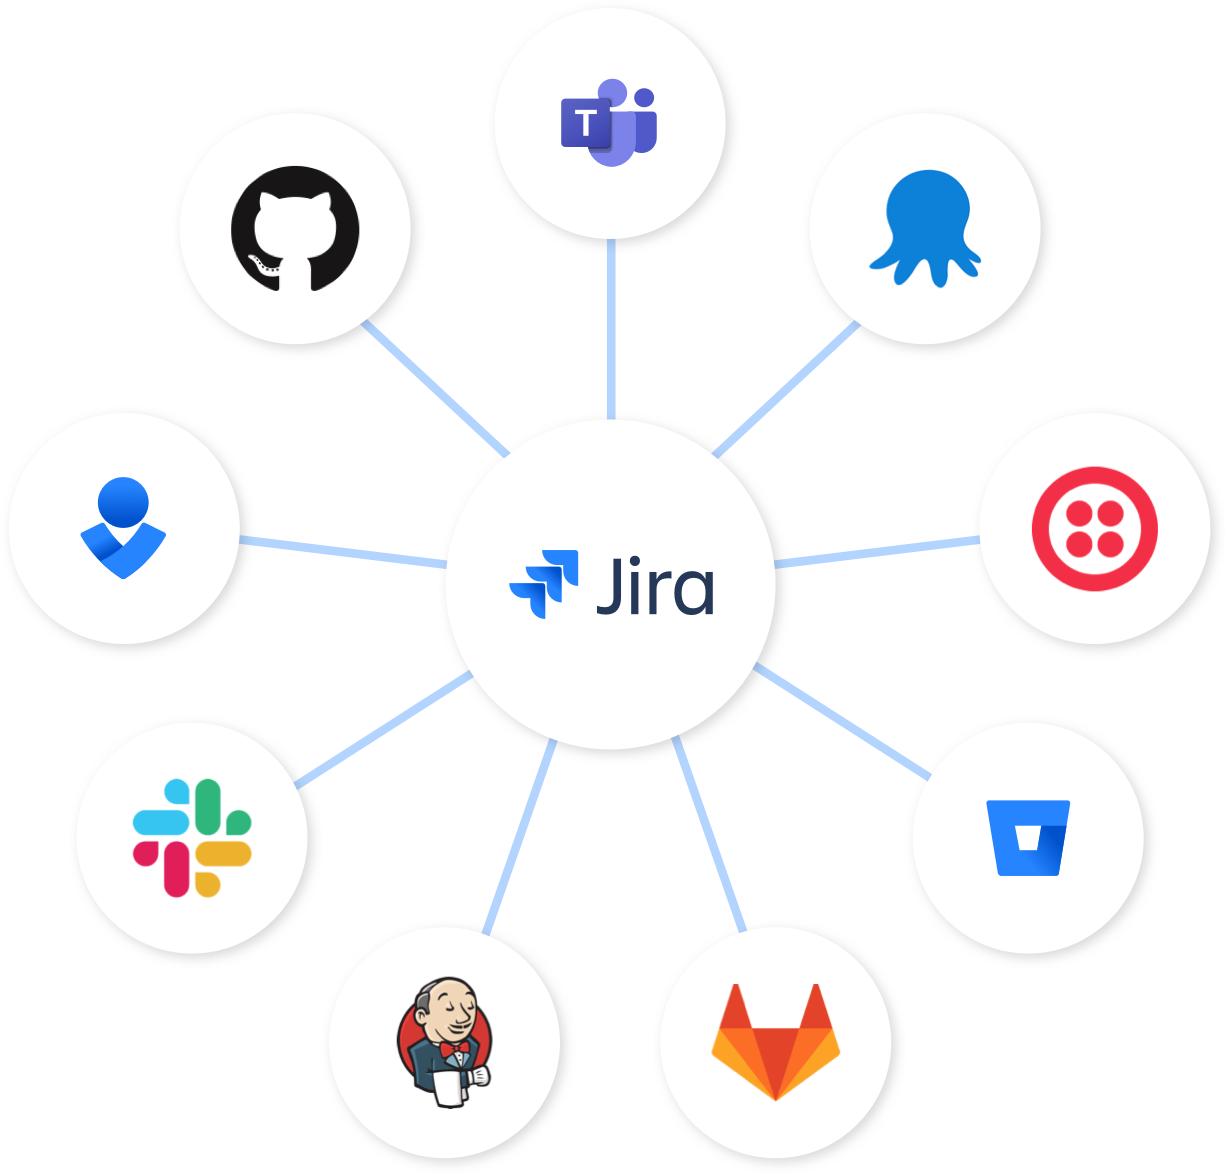 Nodo Jira - Jira al centro collegato a Bitbucket, Slack e Opsgenie